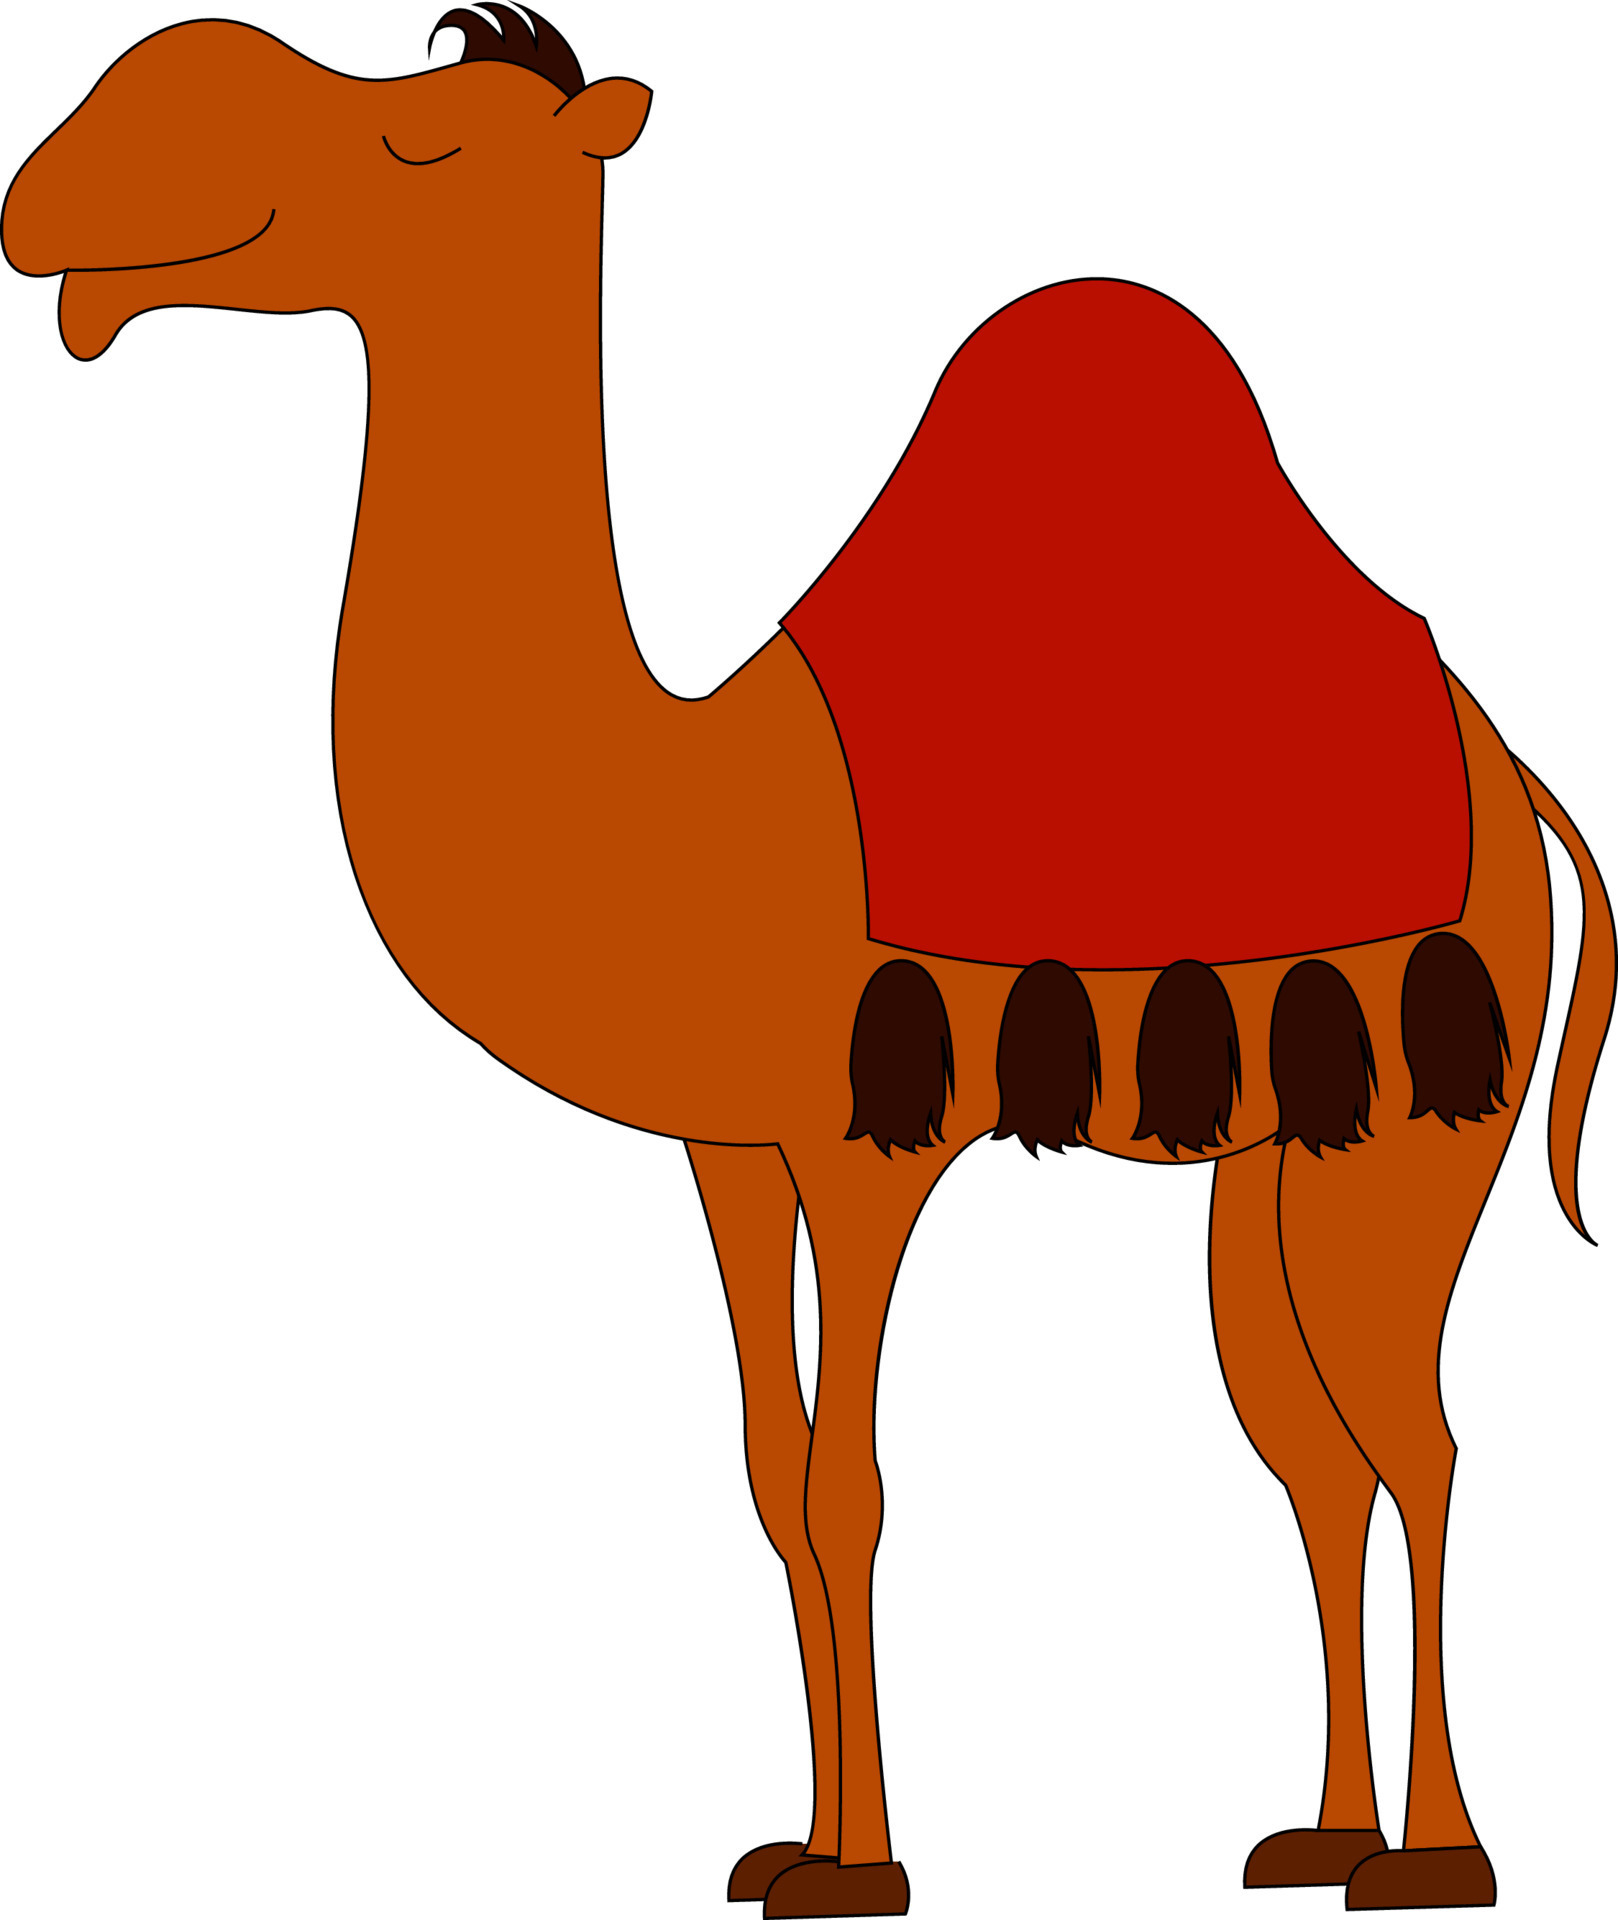 Red camel in desert, illustration, vector on white background. 13849405  Vector Art at Vecteezy